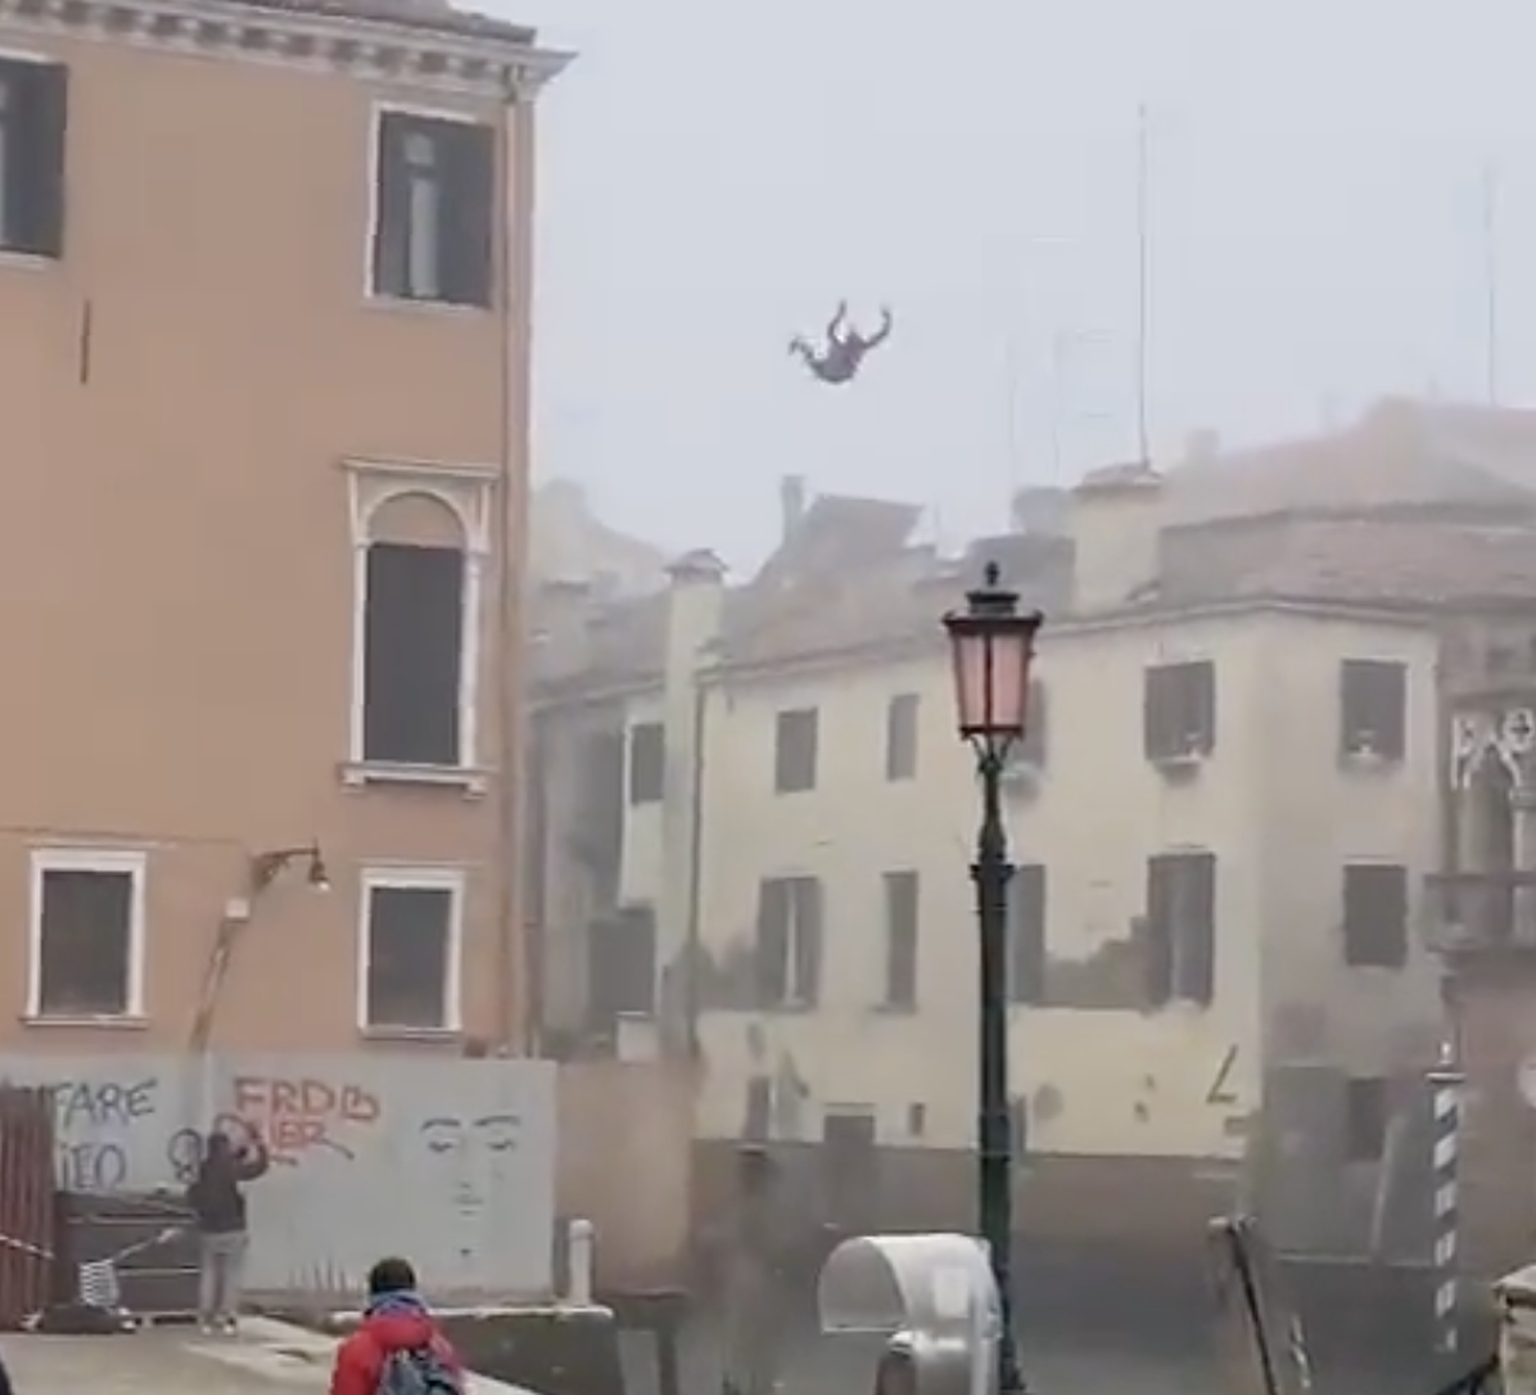 Мужчина прыгает с крыши трехэтажного дома в канал в Венеции